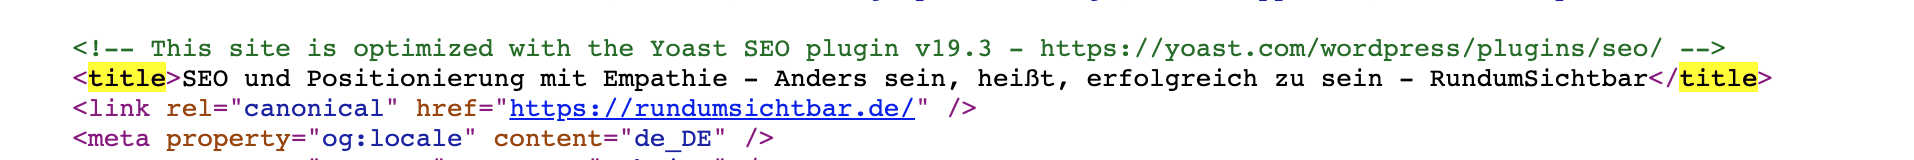 Screenshot eines HTML-Codes mit title tag